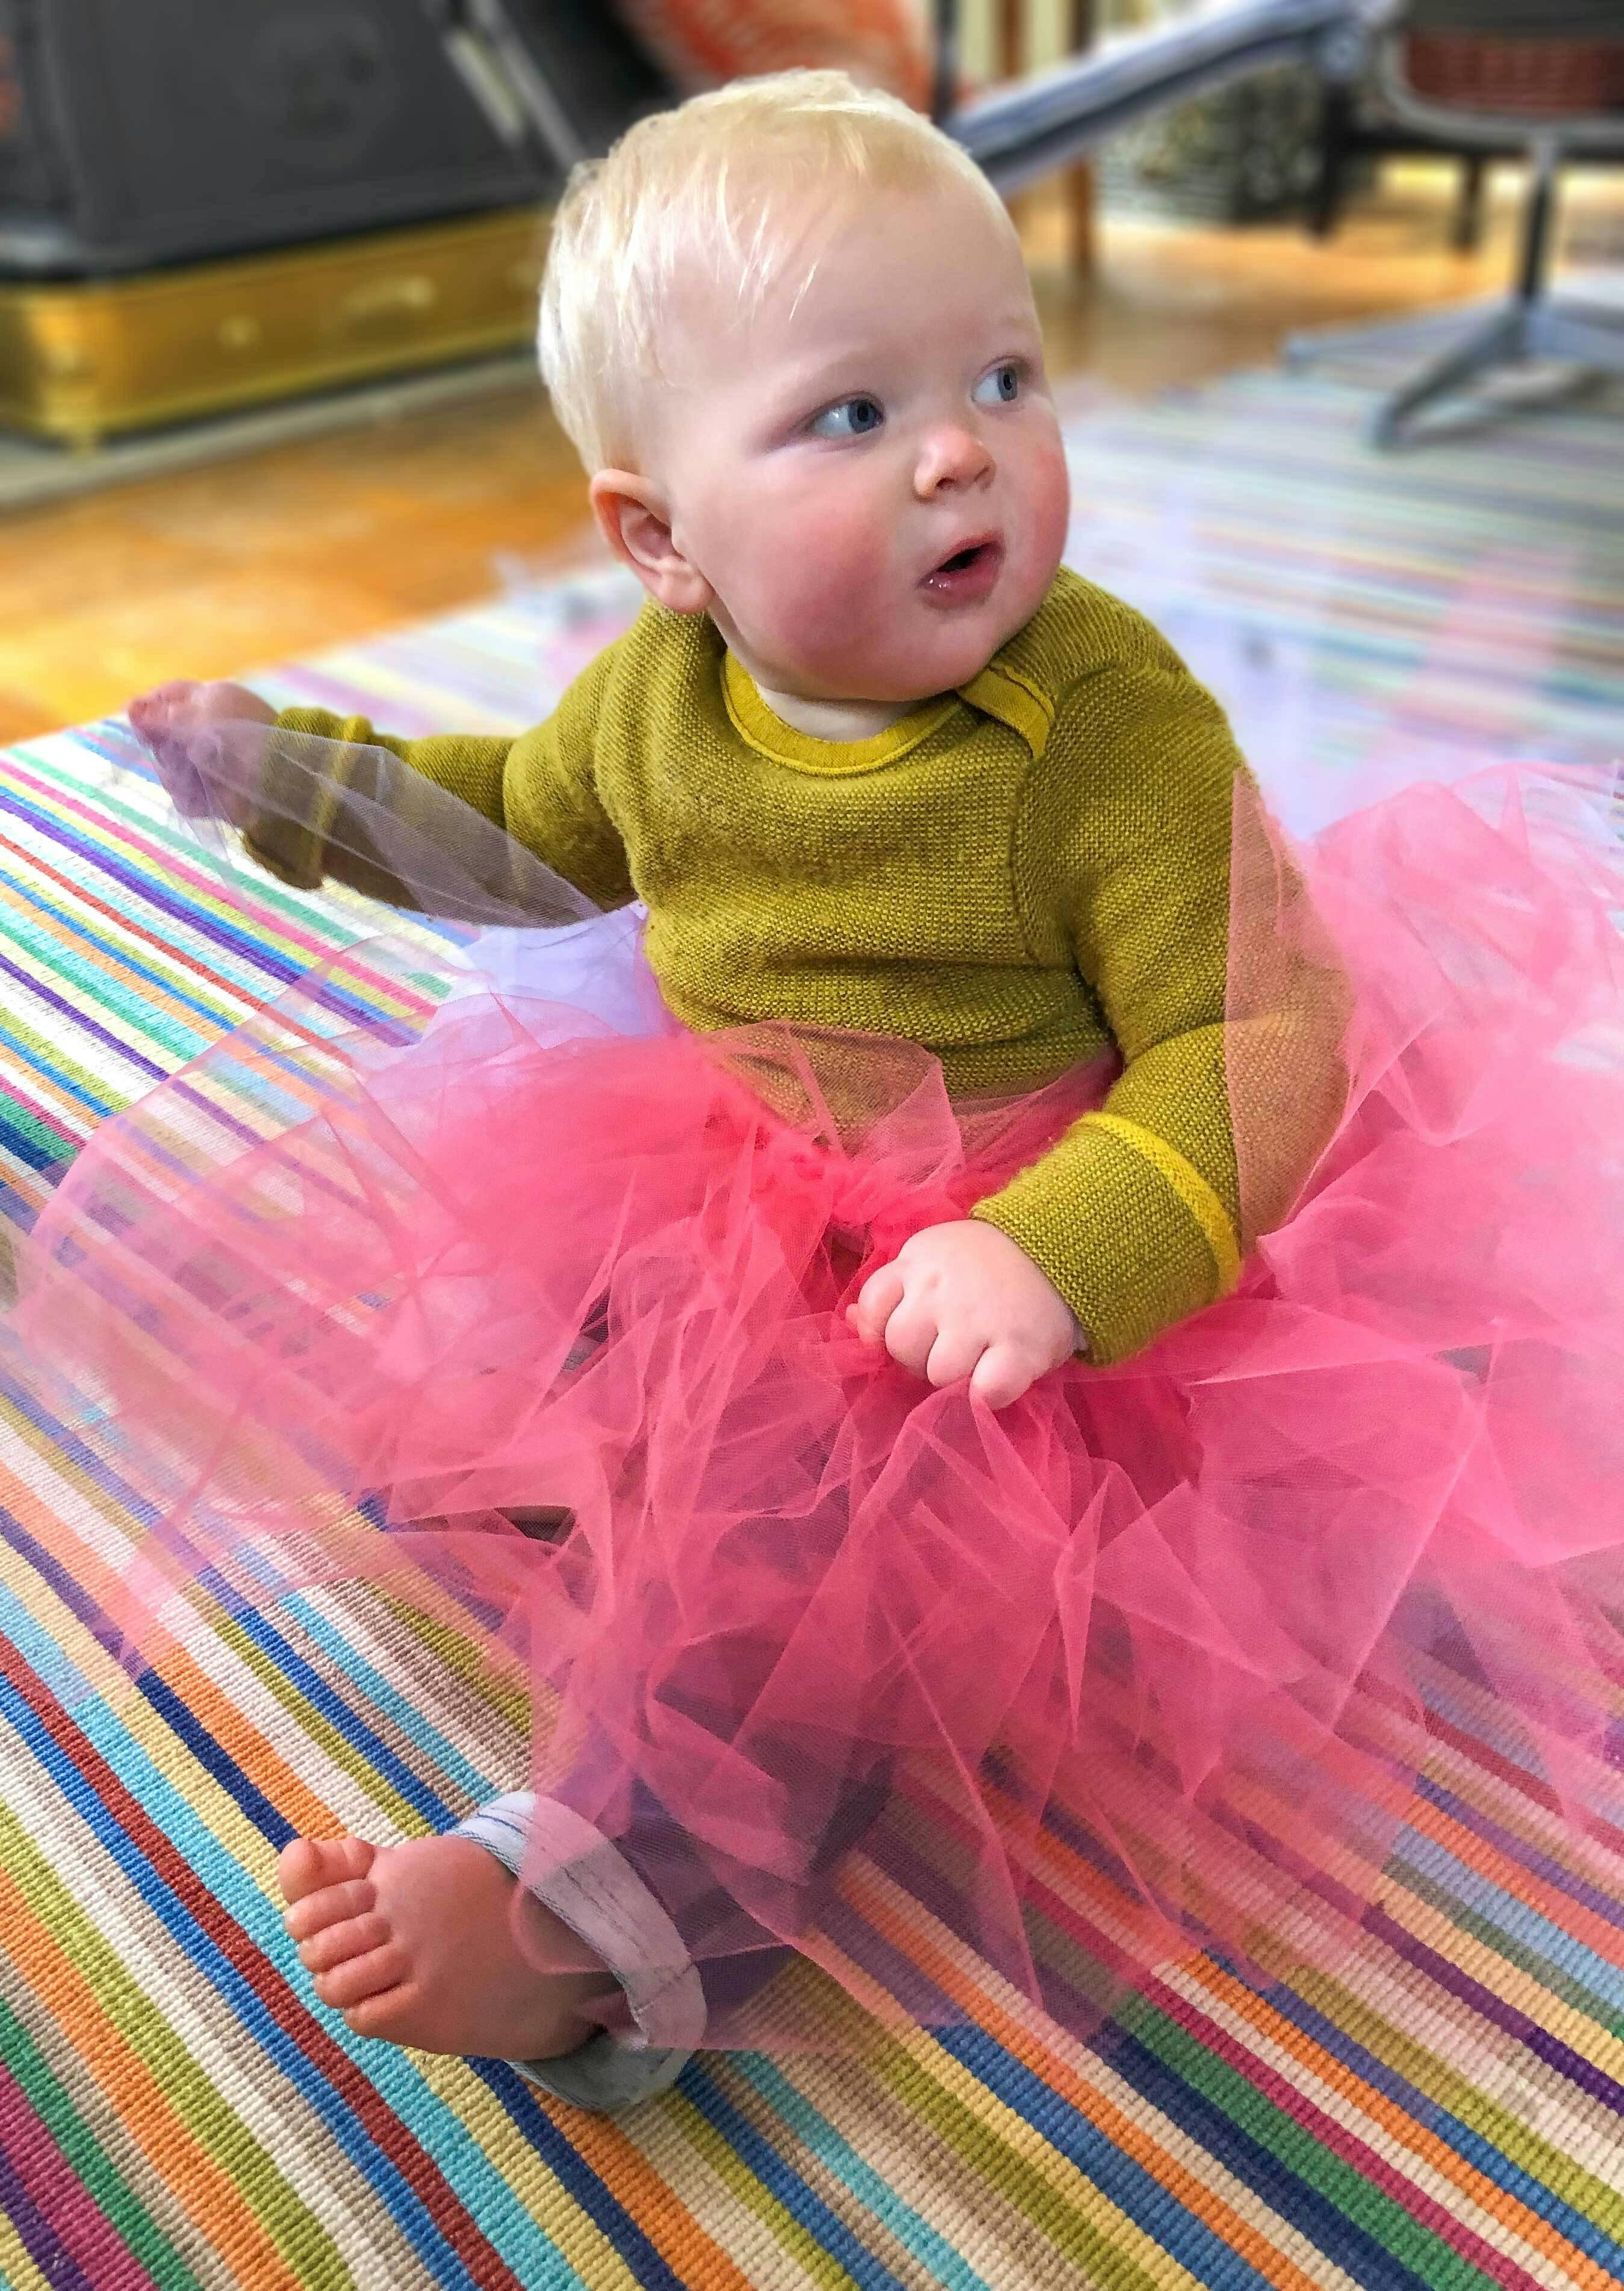  baby wearing a pink tutu 